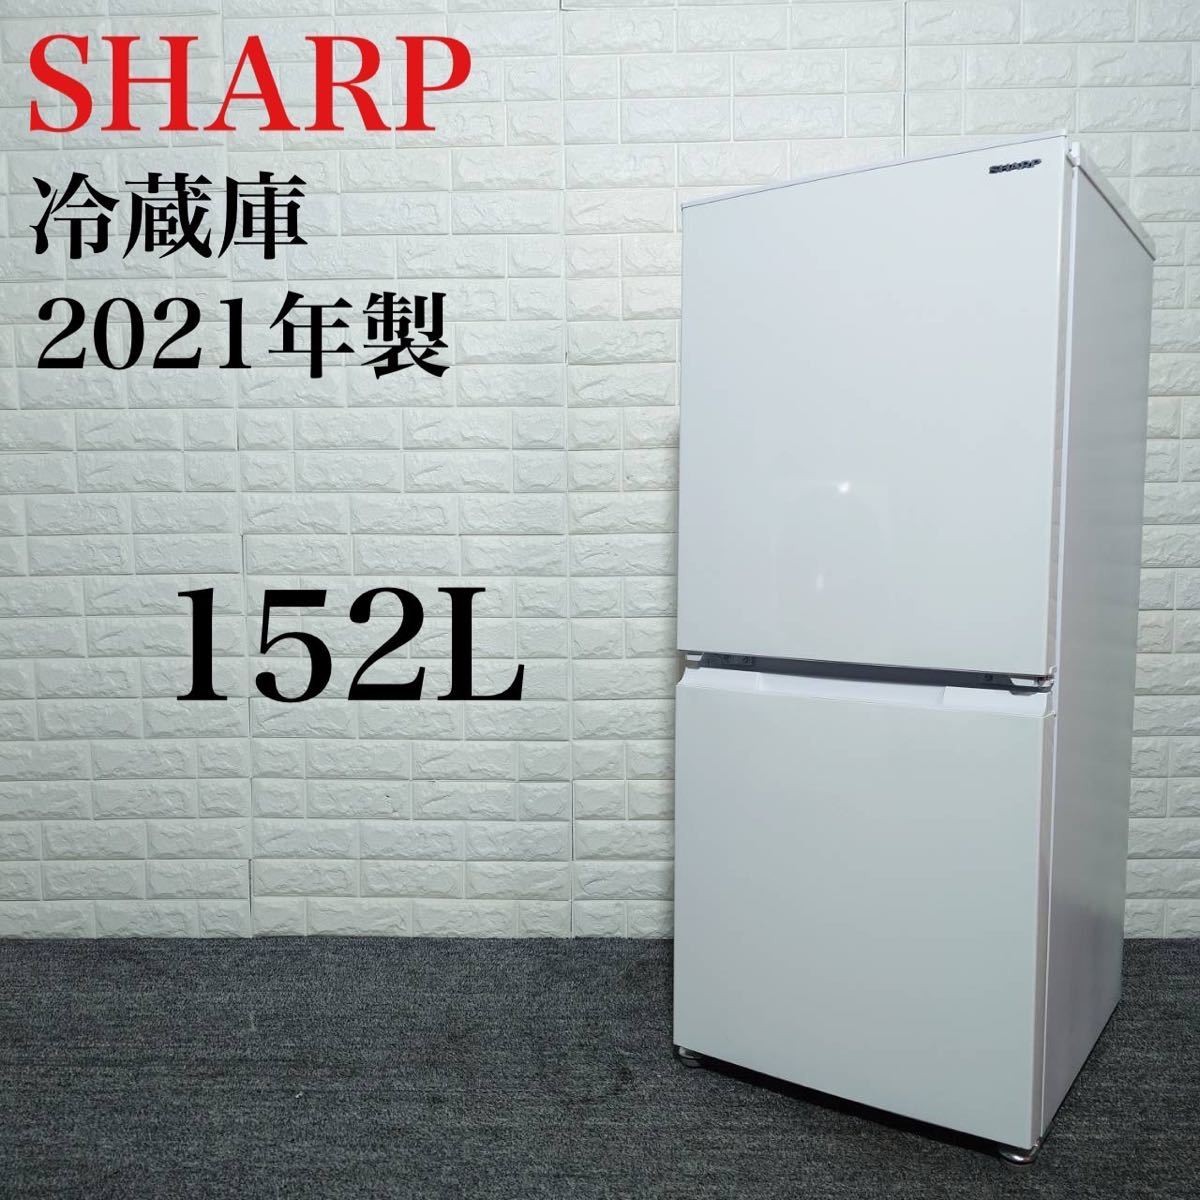 SHARP 冷蔵庫 SJ-D15HJ-W 152L 2021年製 家電 B096